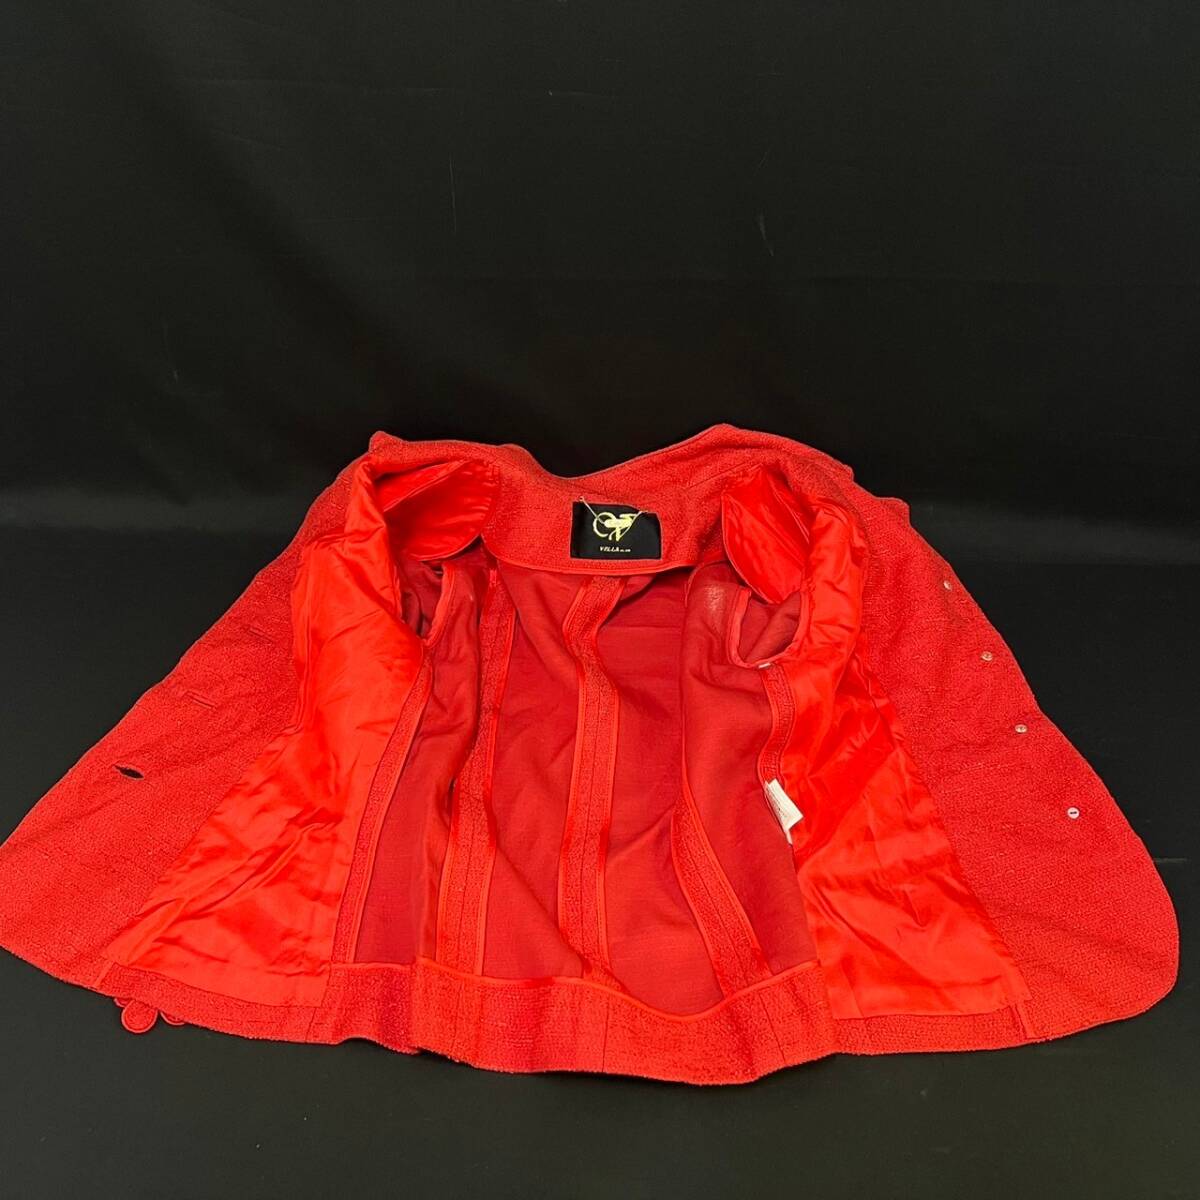 BCg050ハ 80 VELLA/ベラ 銀座マギー スカート スーツ サイズ38 レッド 赤 花柄 ジャケット セットアップ レディース 311-2770 服 洋服の画像5